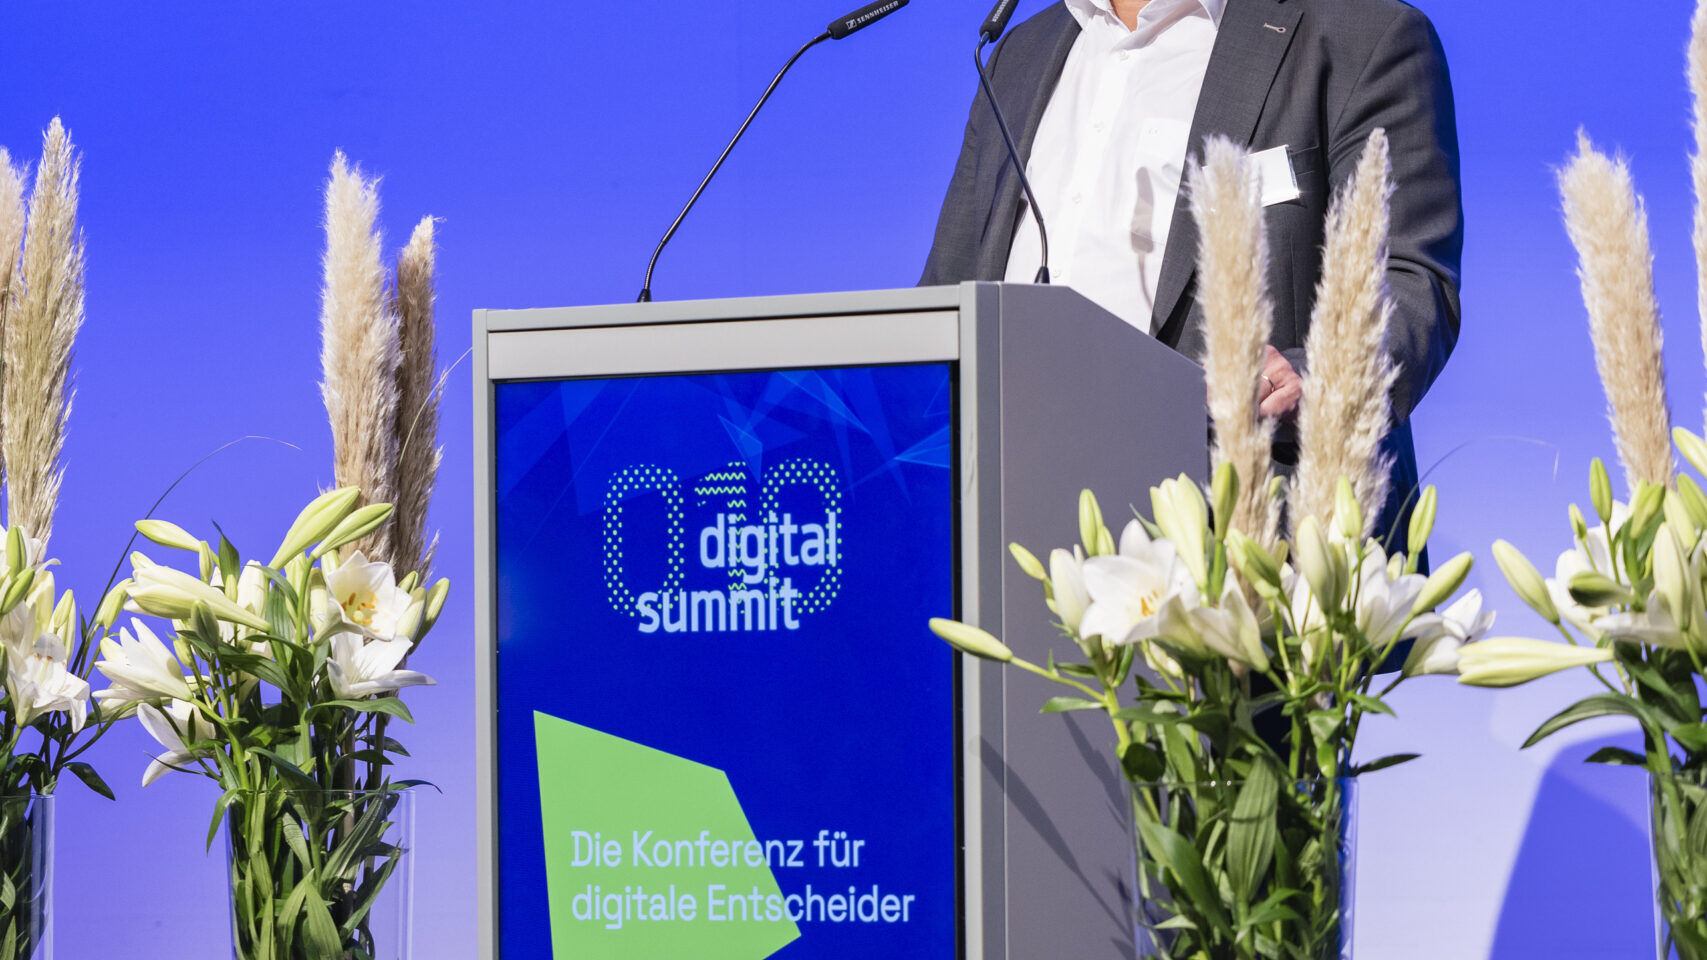 งาน “Digital Summit” ฉบับปี 2022 ที่เมืองวาดุซ